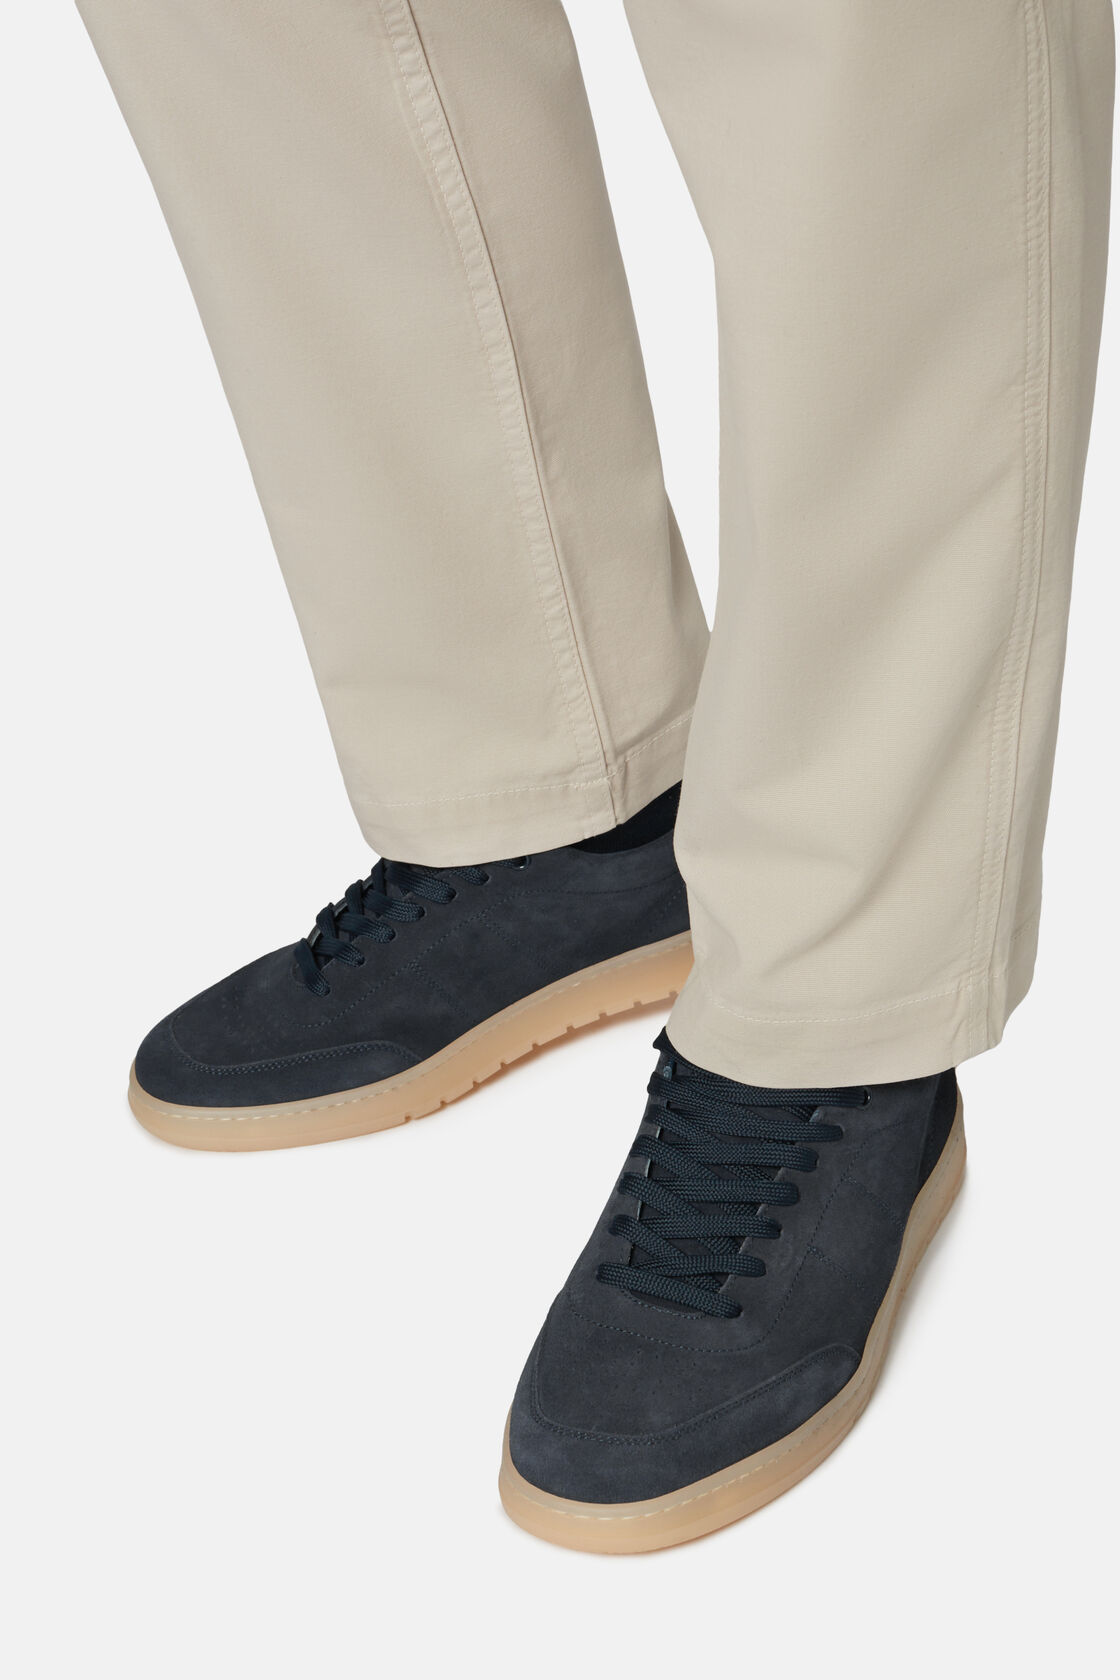 Navyblaue Sneakers aus Veloursleder, Navy blau, hi-res